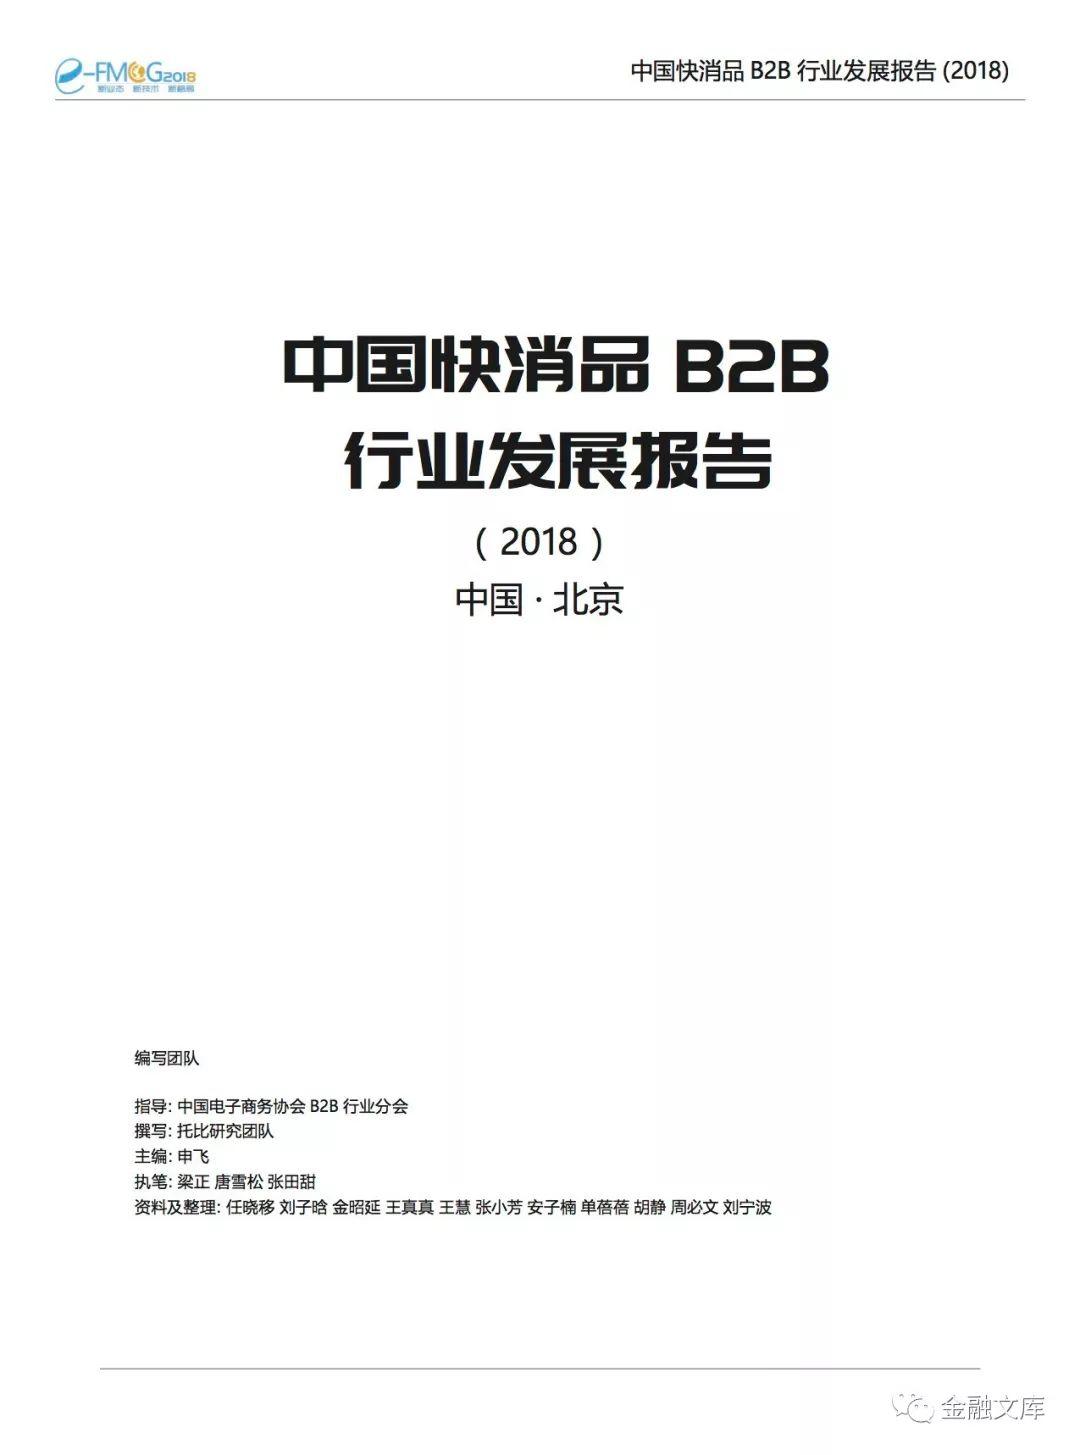 2018中国快消品B2B行业发展报告